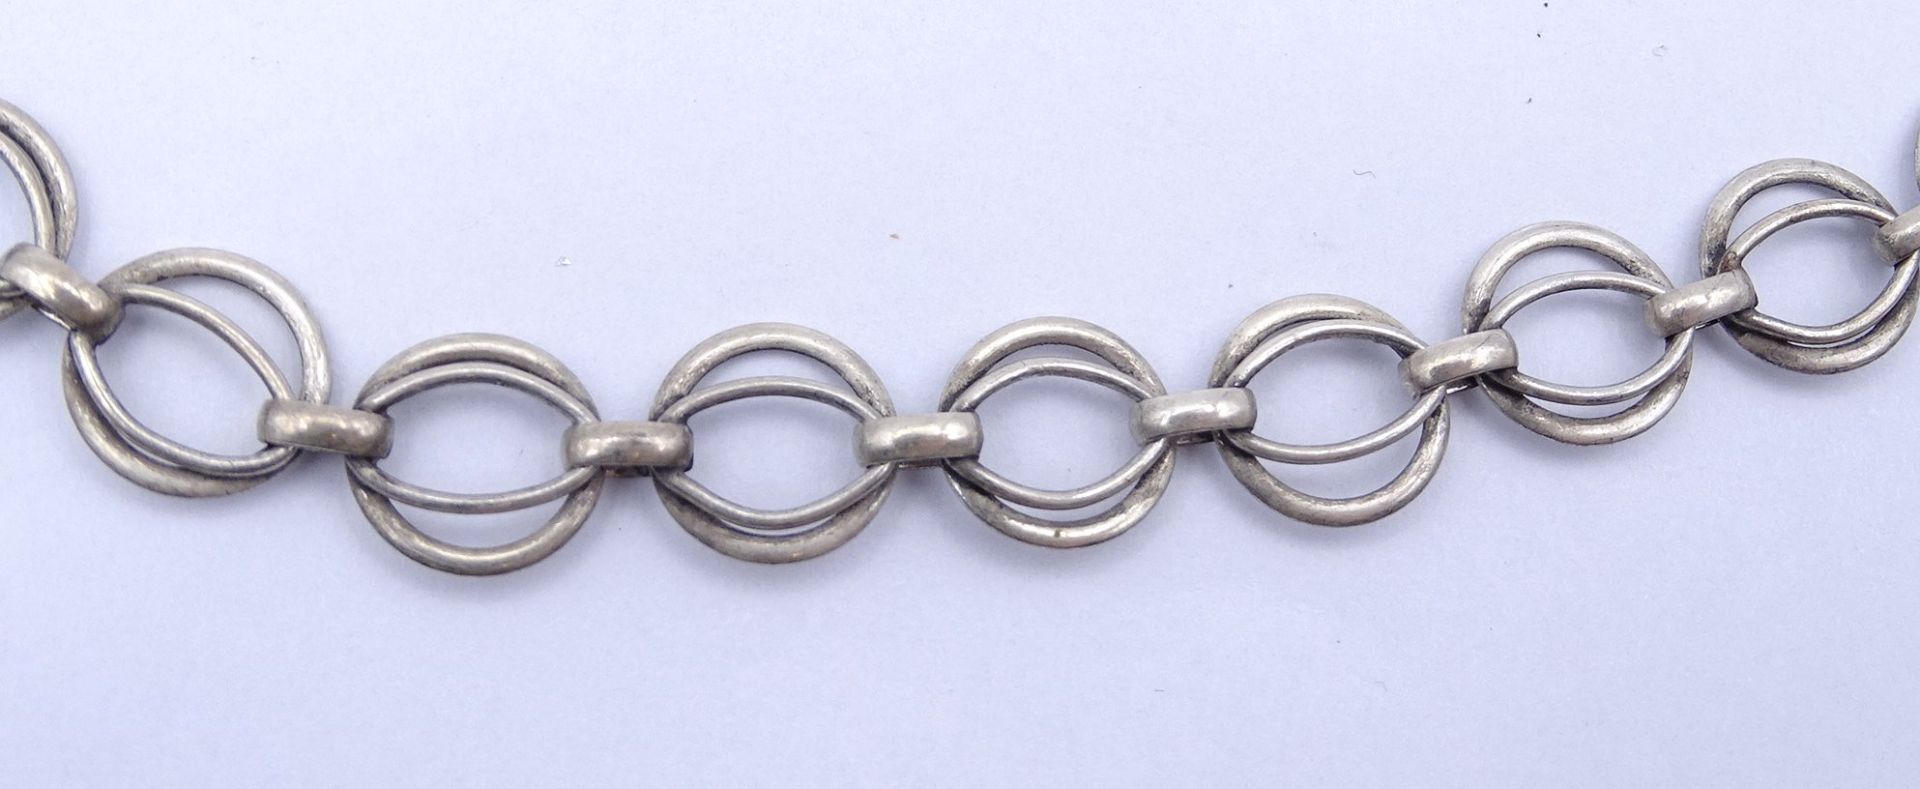 Halskette, Silber 0.800, L. 40-46cm, 15g. - Image 2 of 3